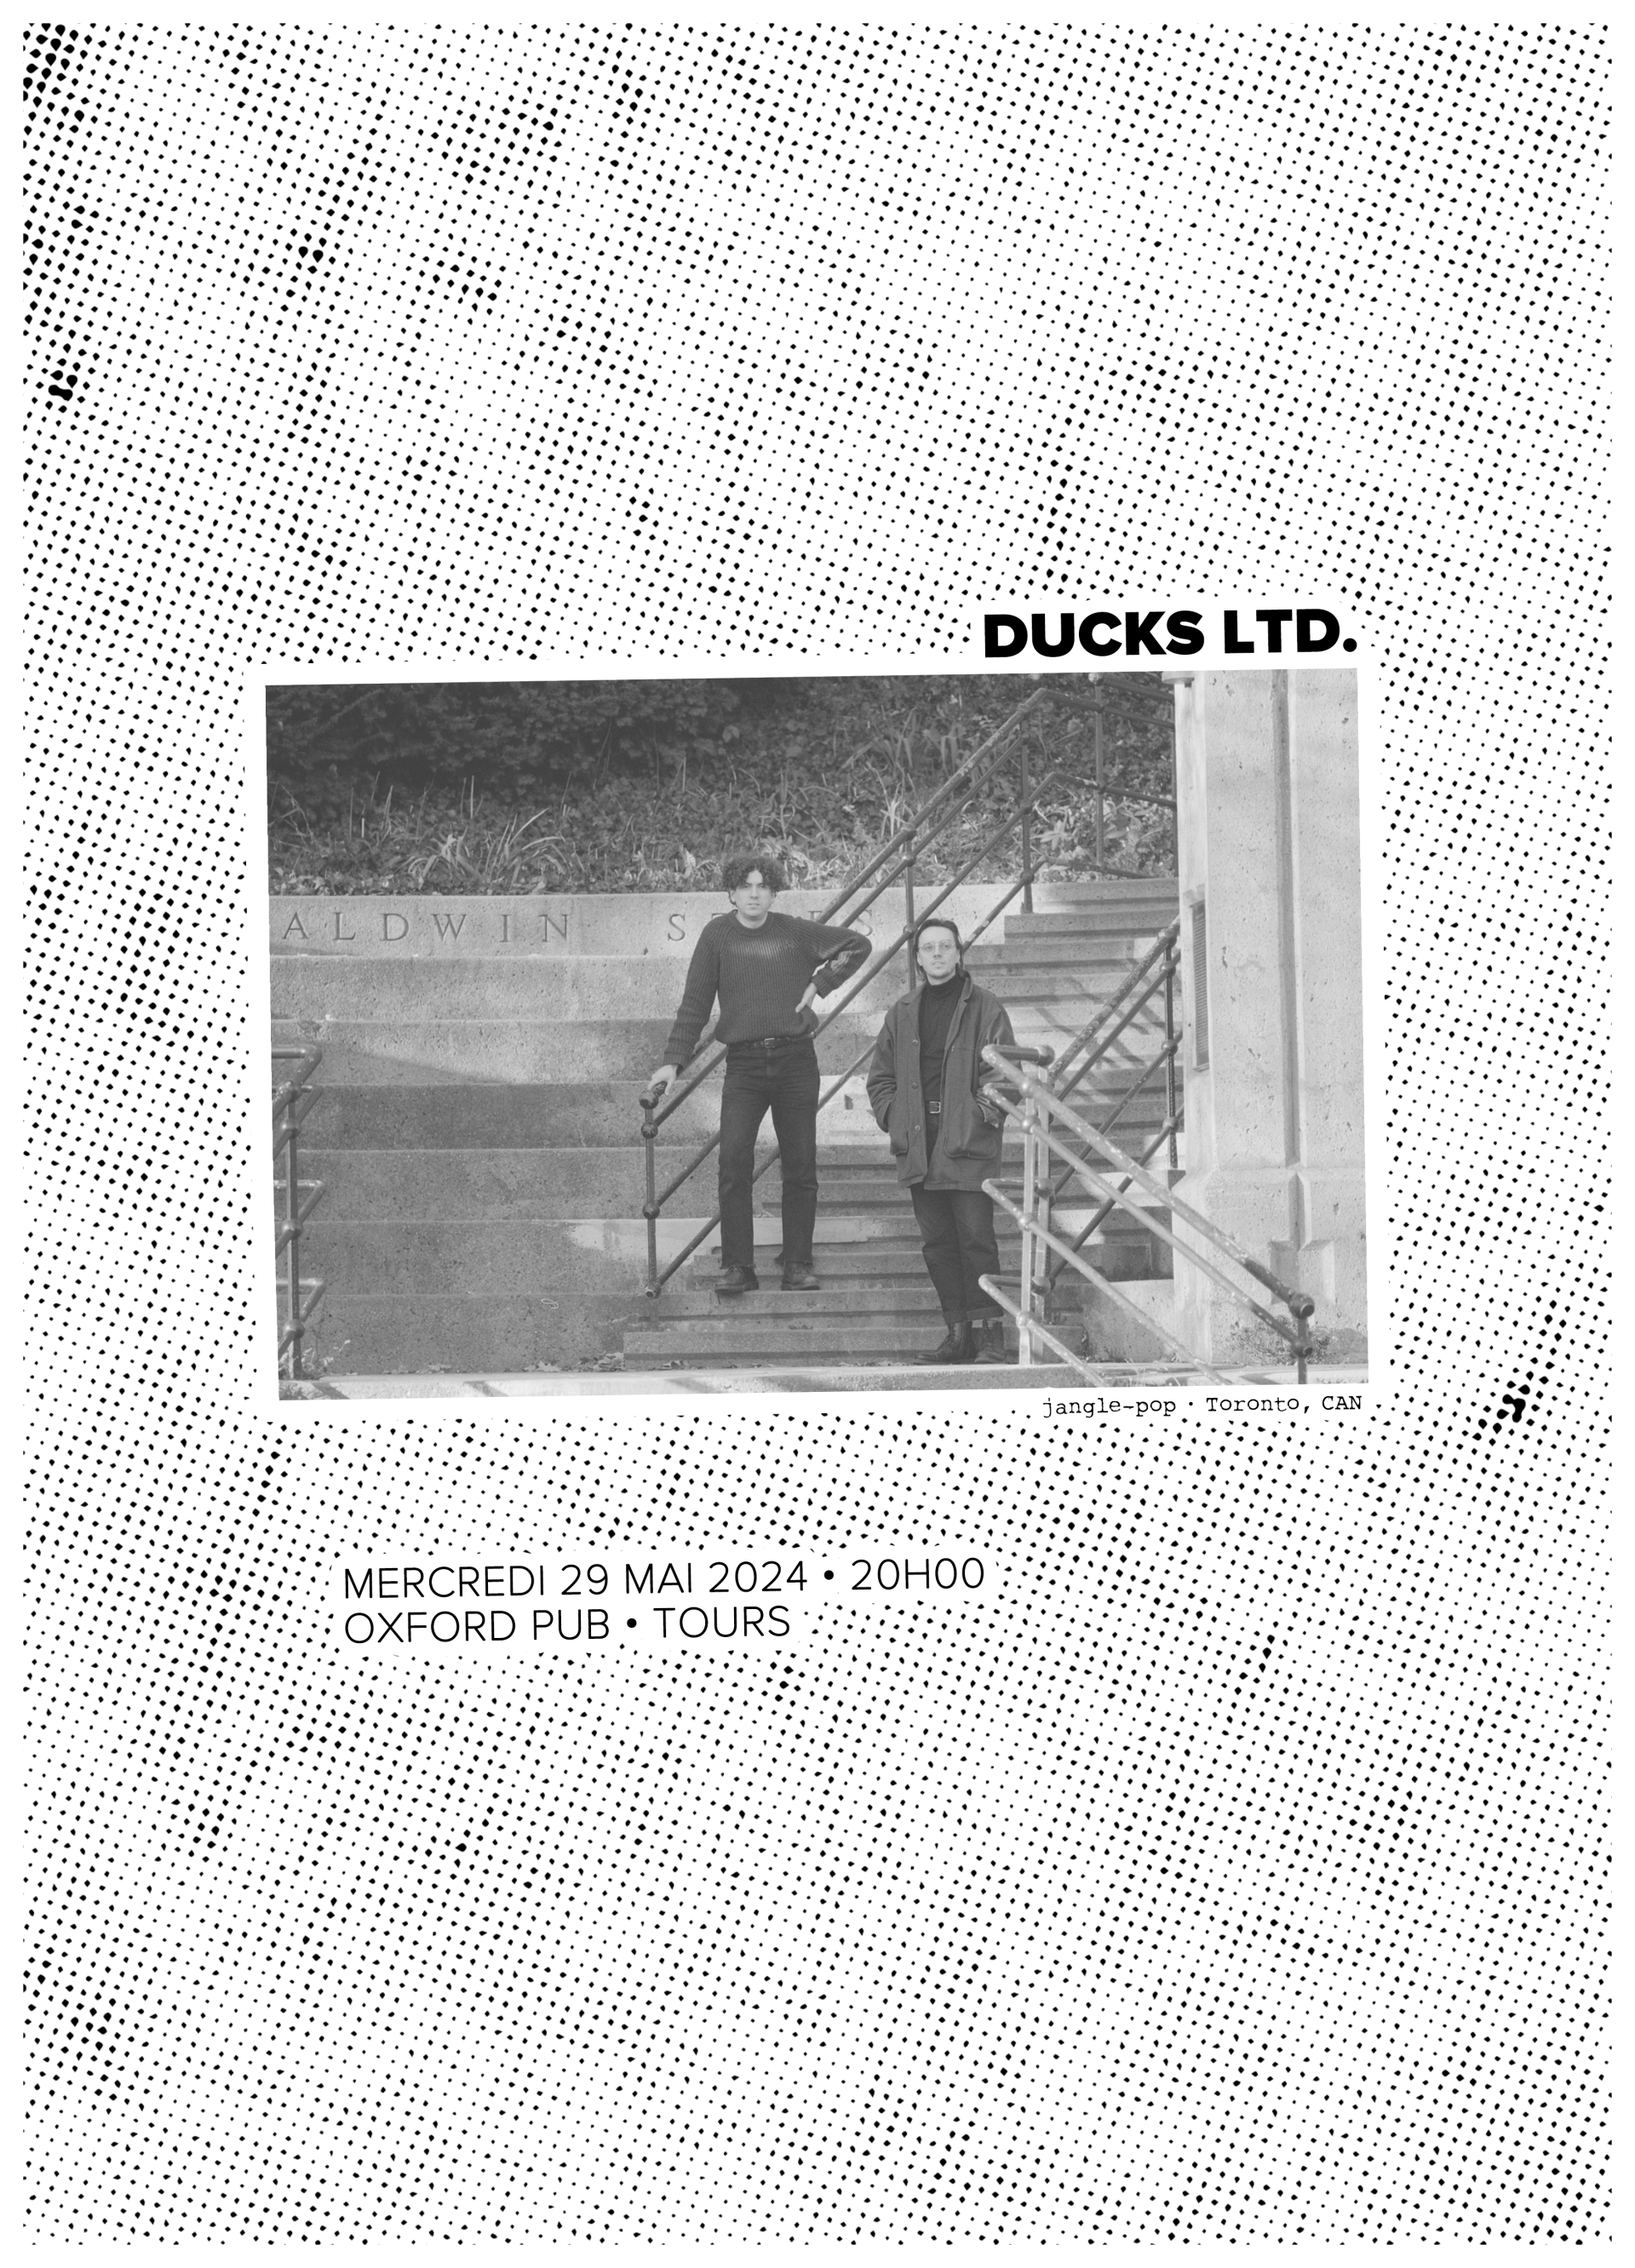 Ducks LTD